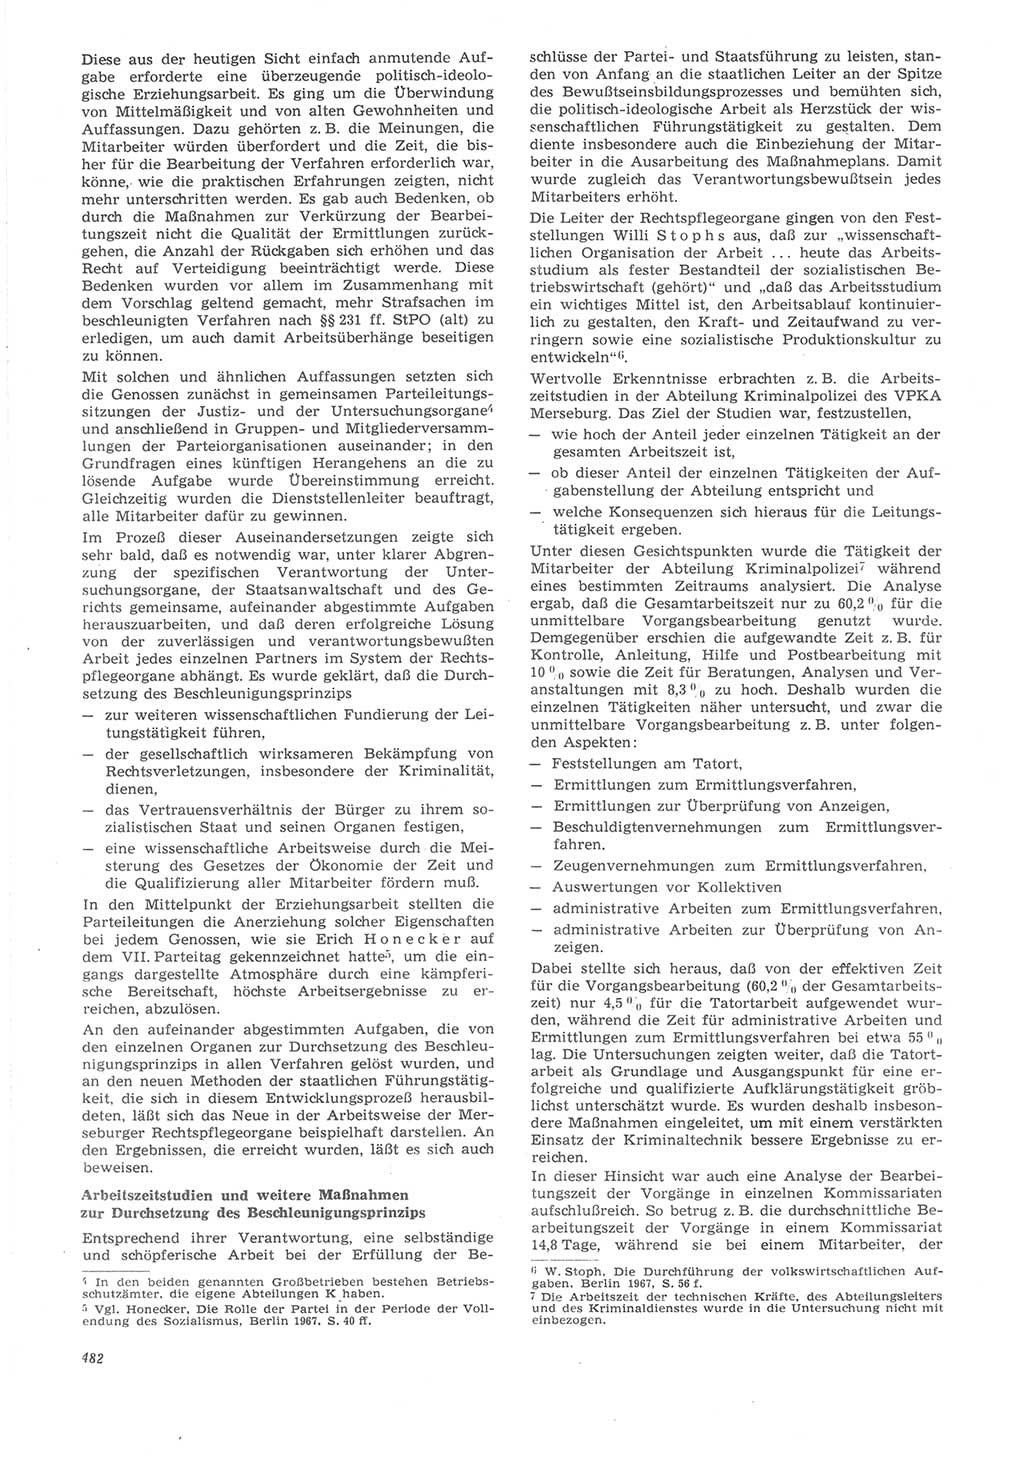 Neue Justiz (NJ), Zeitschrift für Recht und Rechtswissenschaft [Deutsche Demokratische Republik (DDR)], 22. Jahrgang 1968, Seite 482 (NJ DDR 1968, S. 482)